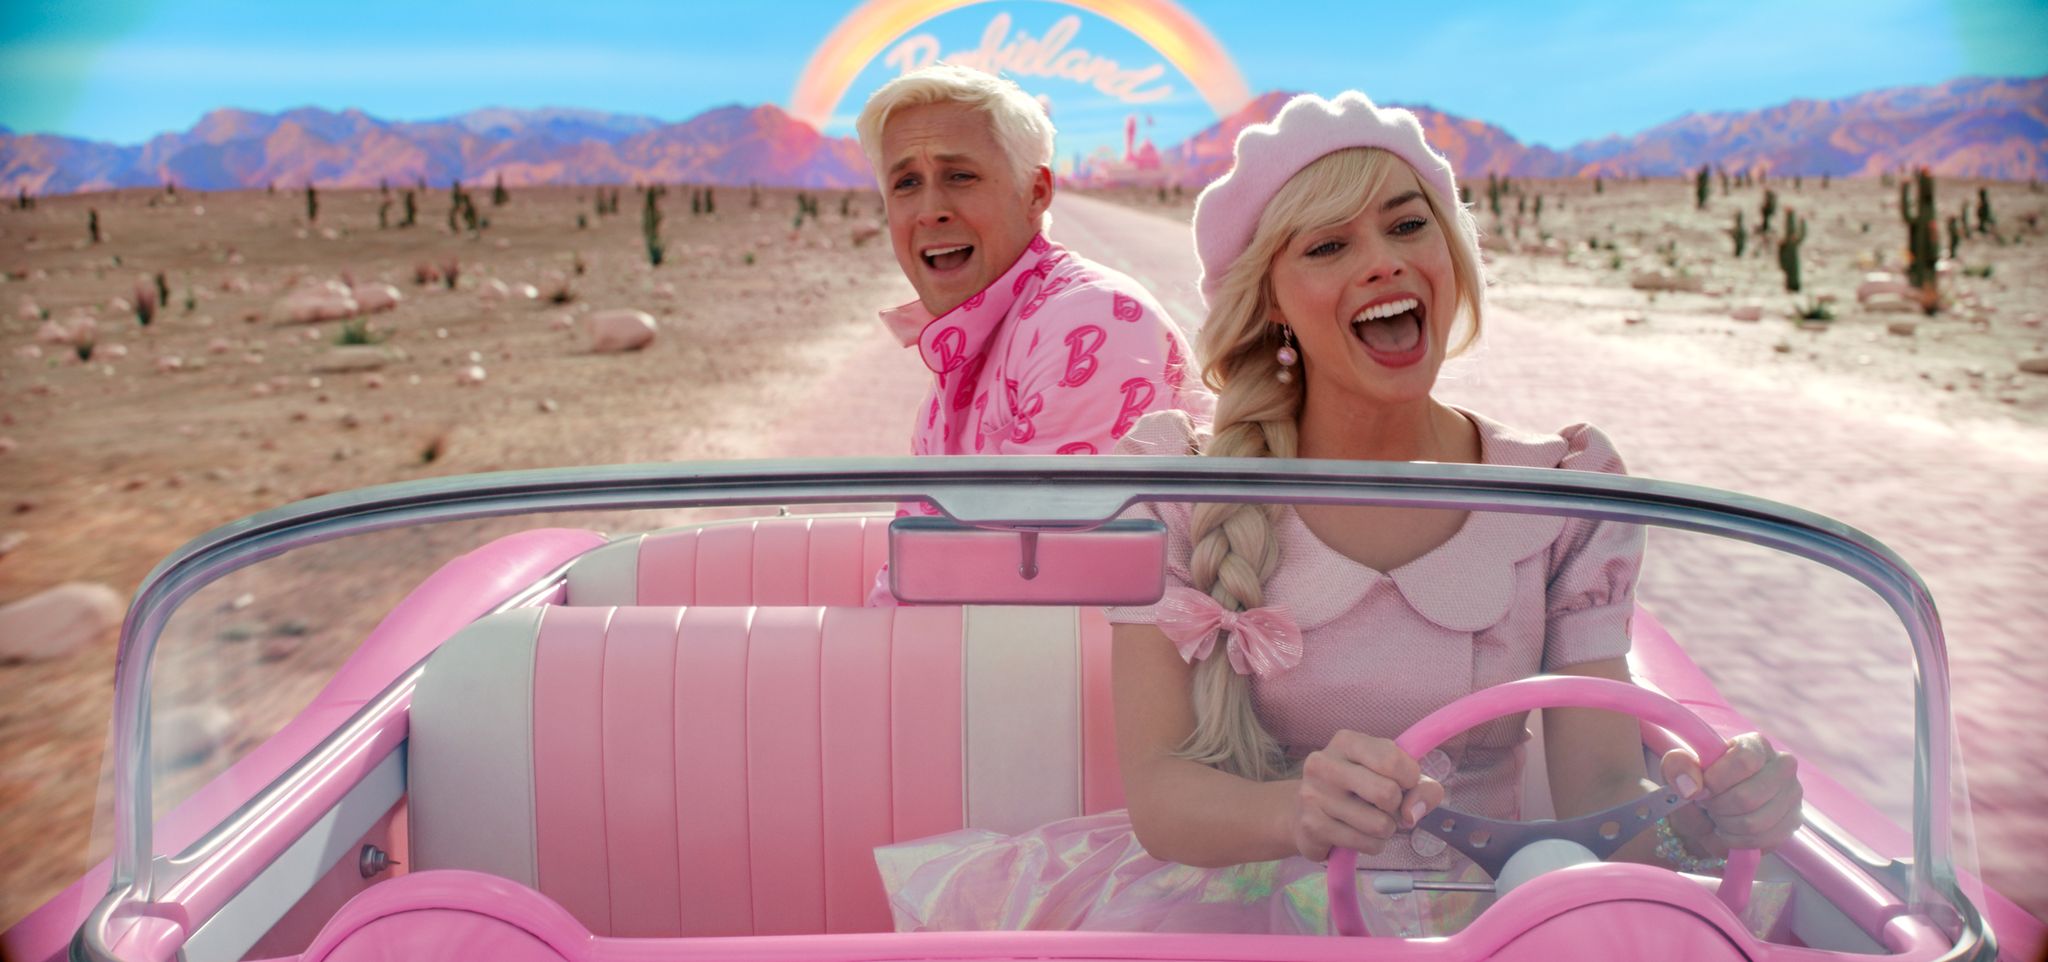 Ryan Gosling als Ken und Margot Robbie als Barbie in einer Szene der Films "Barbie".